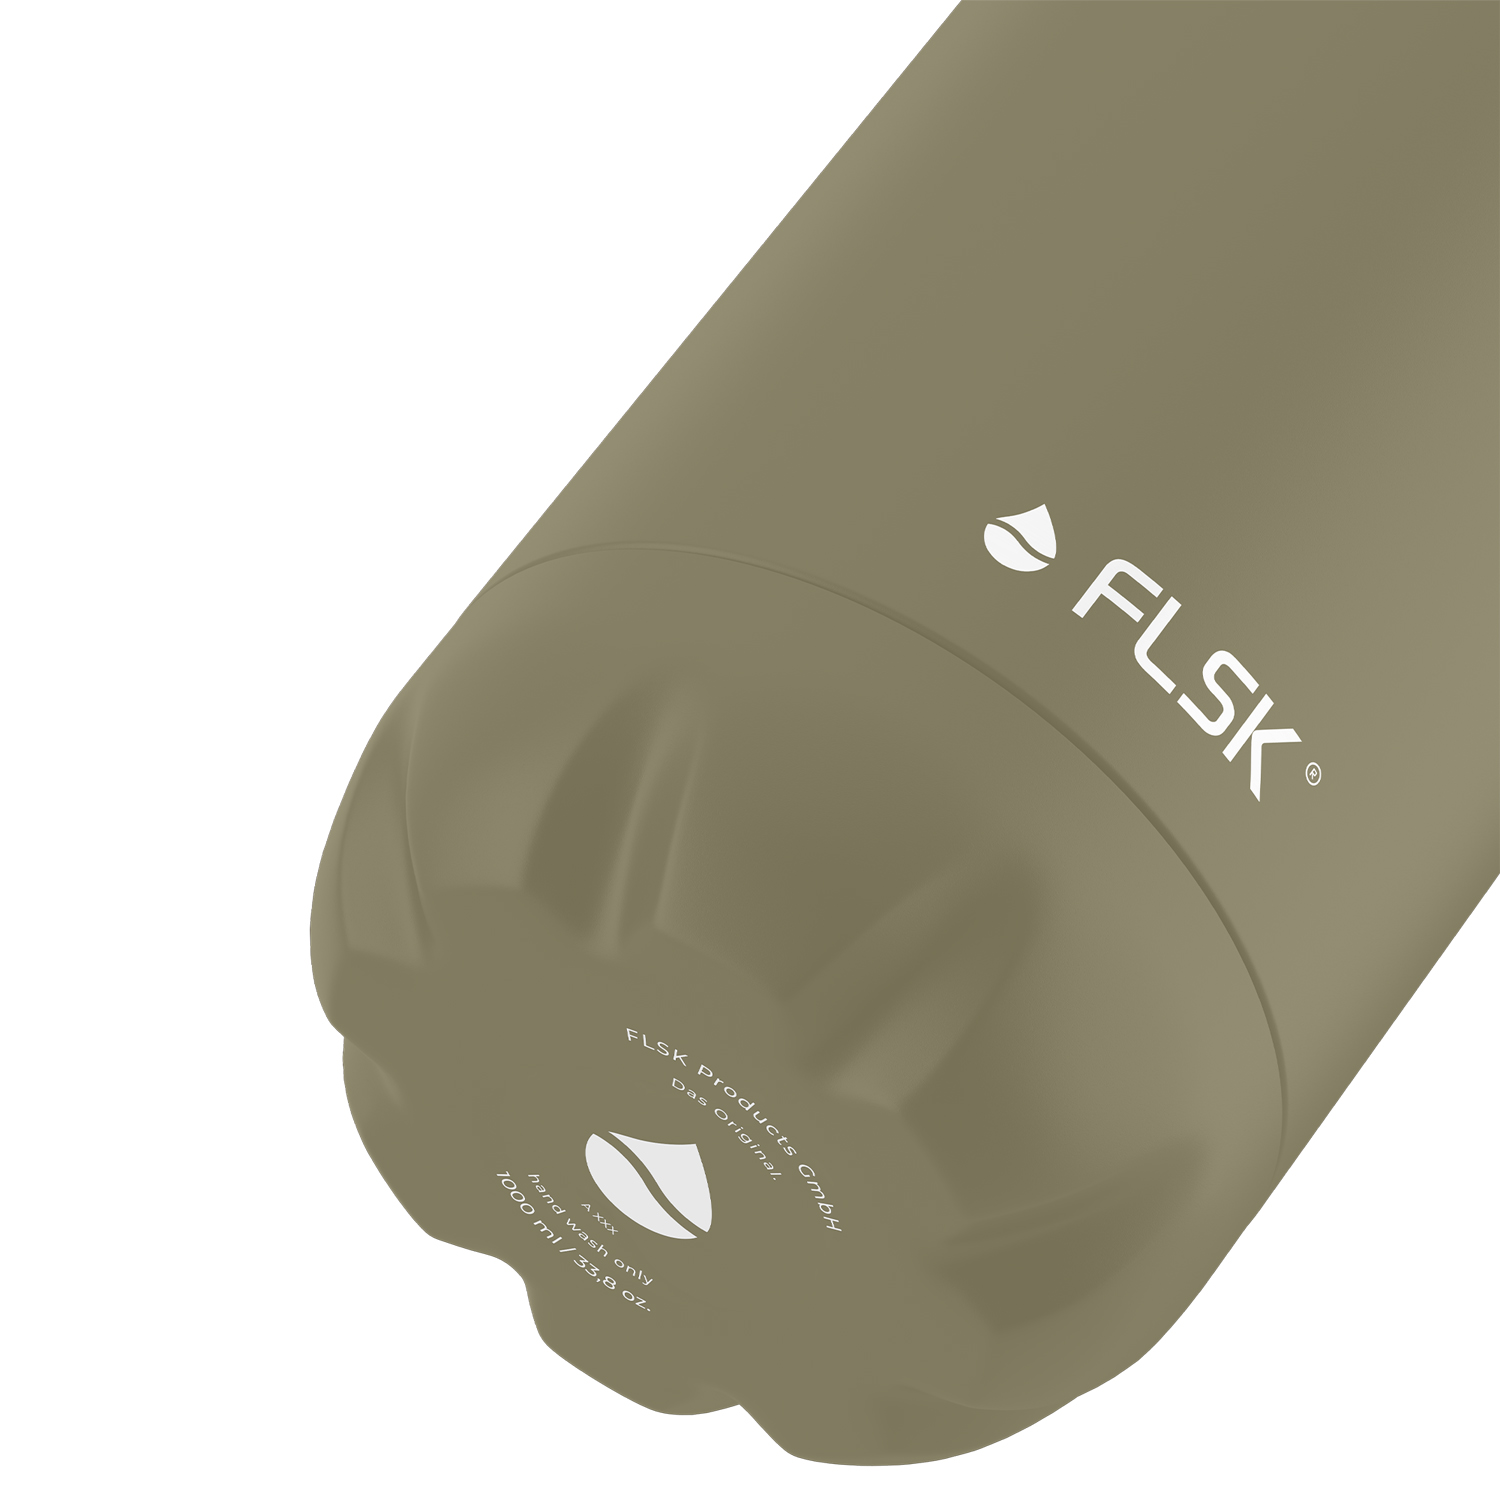 FLSK Trinkflasche Edelstahl khaki Inhalt 1l Thermosflasche Trinköffnung 3,4cm in Geschenkbox